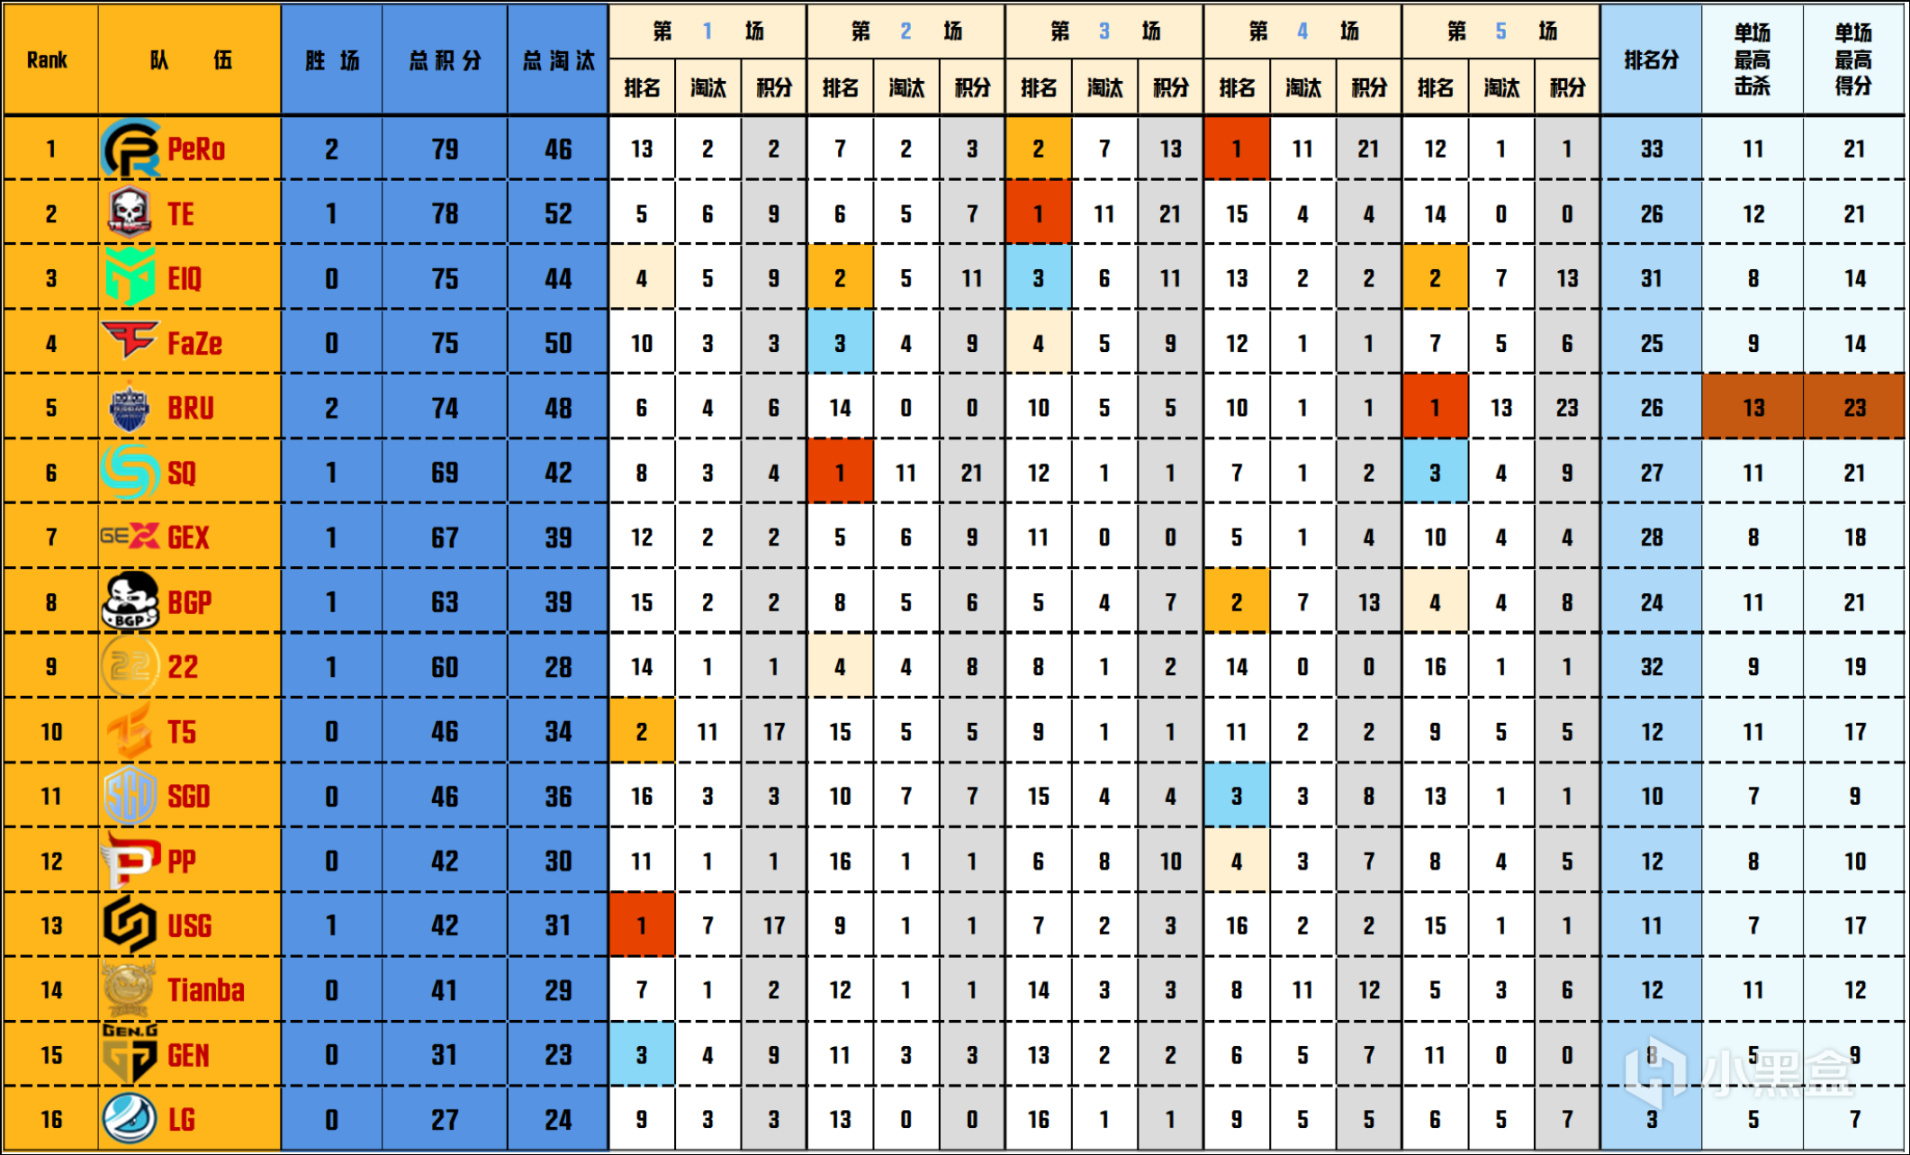 【数据流】PGC败者组阶段1:PeRo,GEX晋级阶段2,Tianba参加资格战-第1张